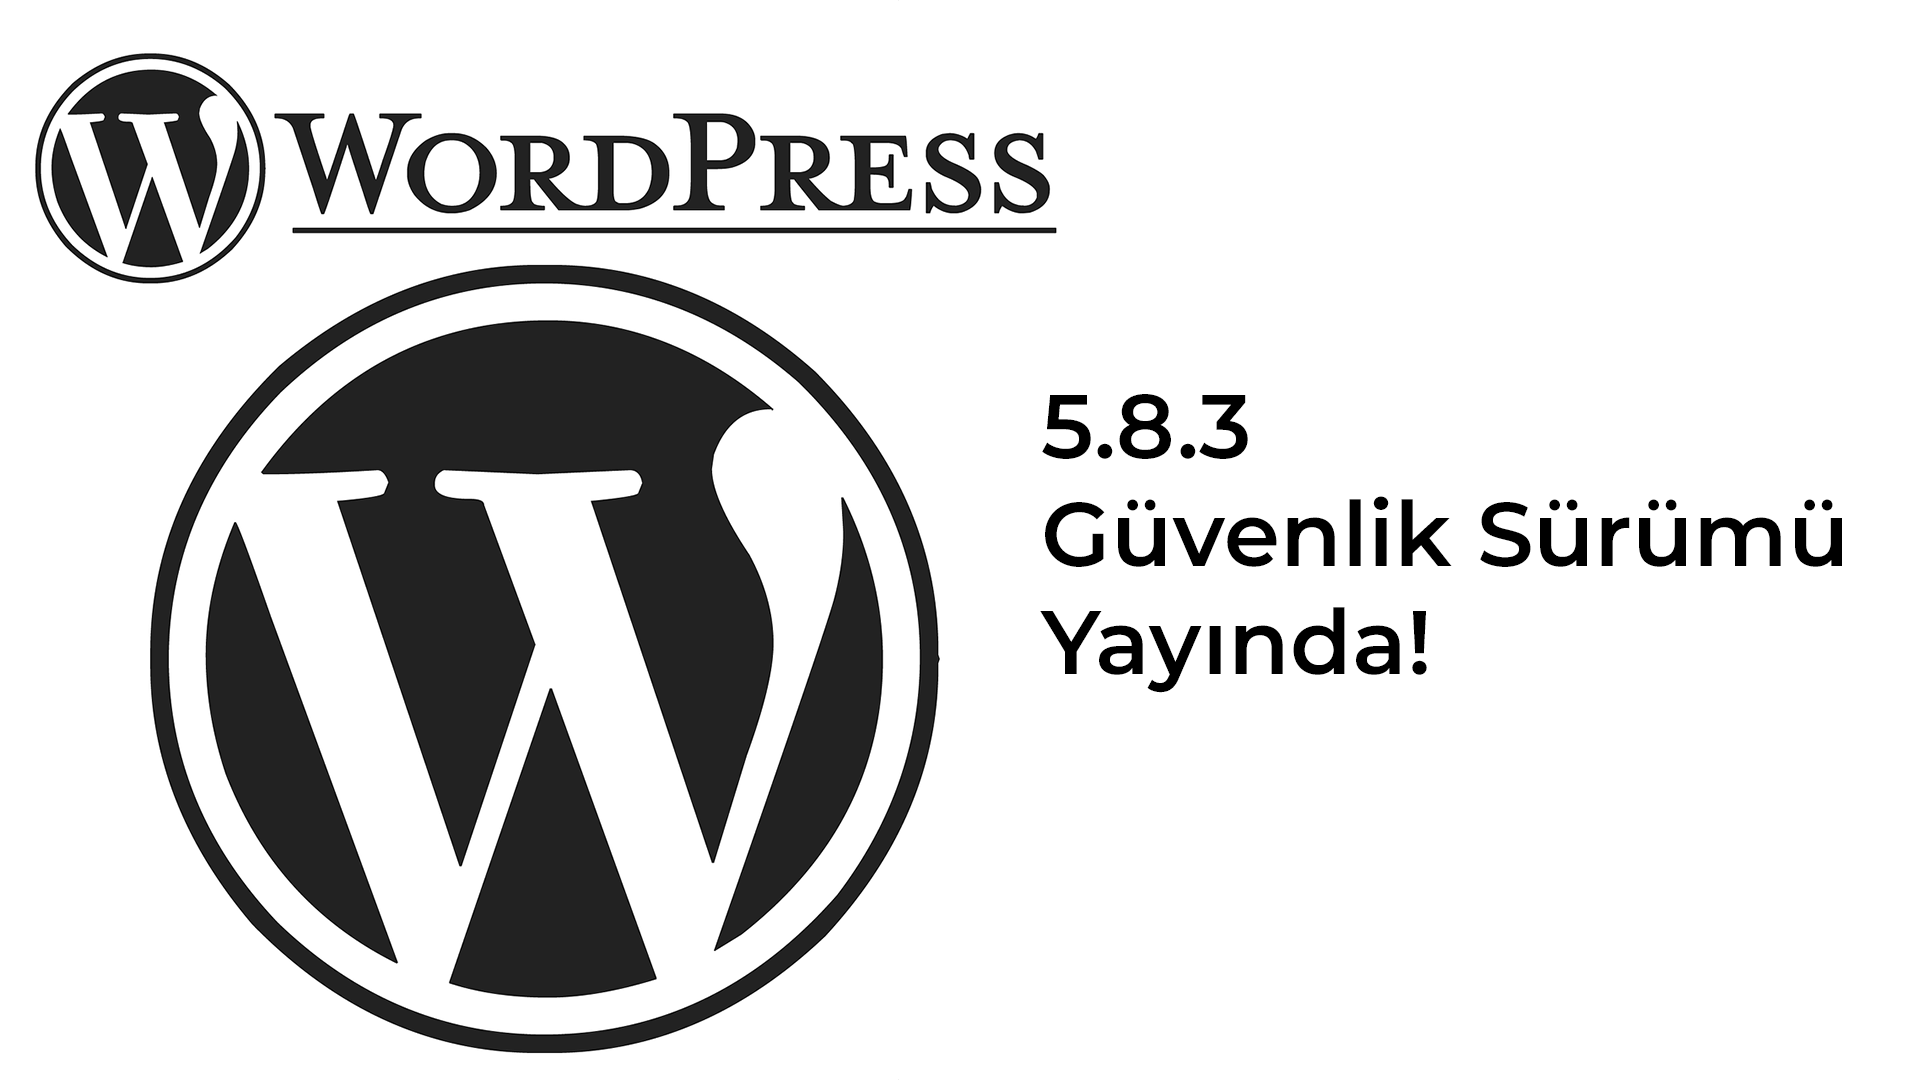 WordPress 5.8.3 Güvenlik Sürümü Yayında!